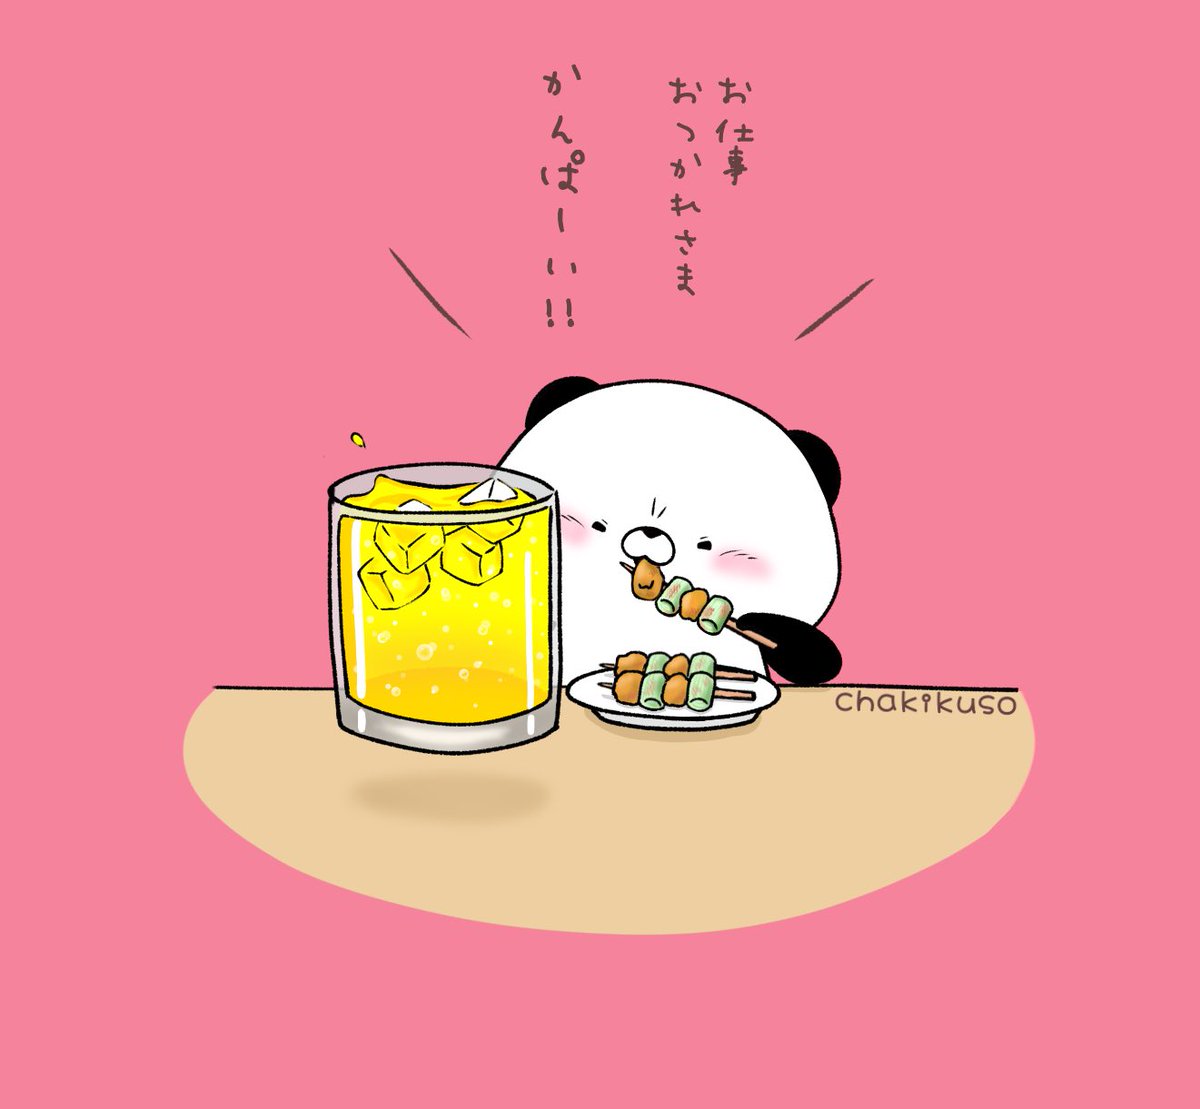 「今週もお疲れ様でした。。
パンダくんが飲んでるのはしーしーれもんです
#イラスト」|chakikusoのイラスト